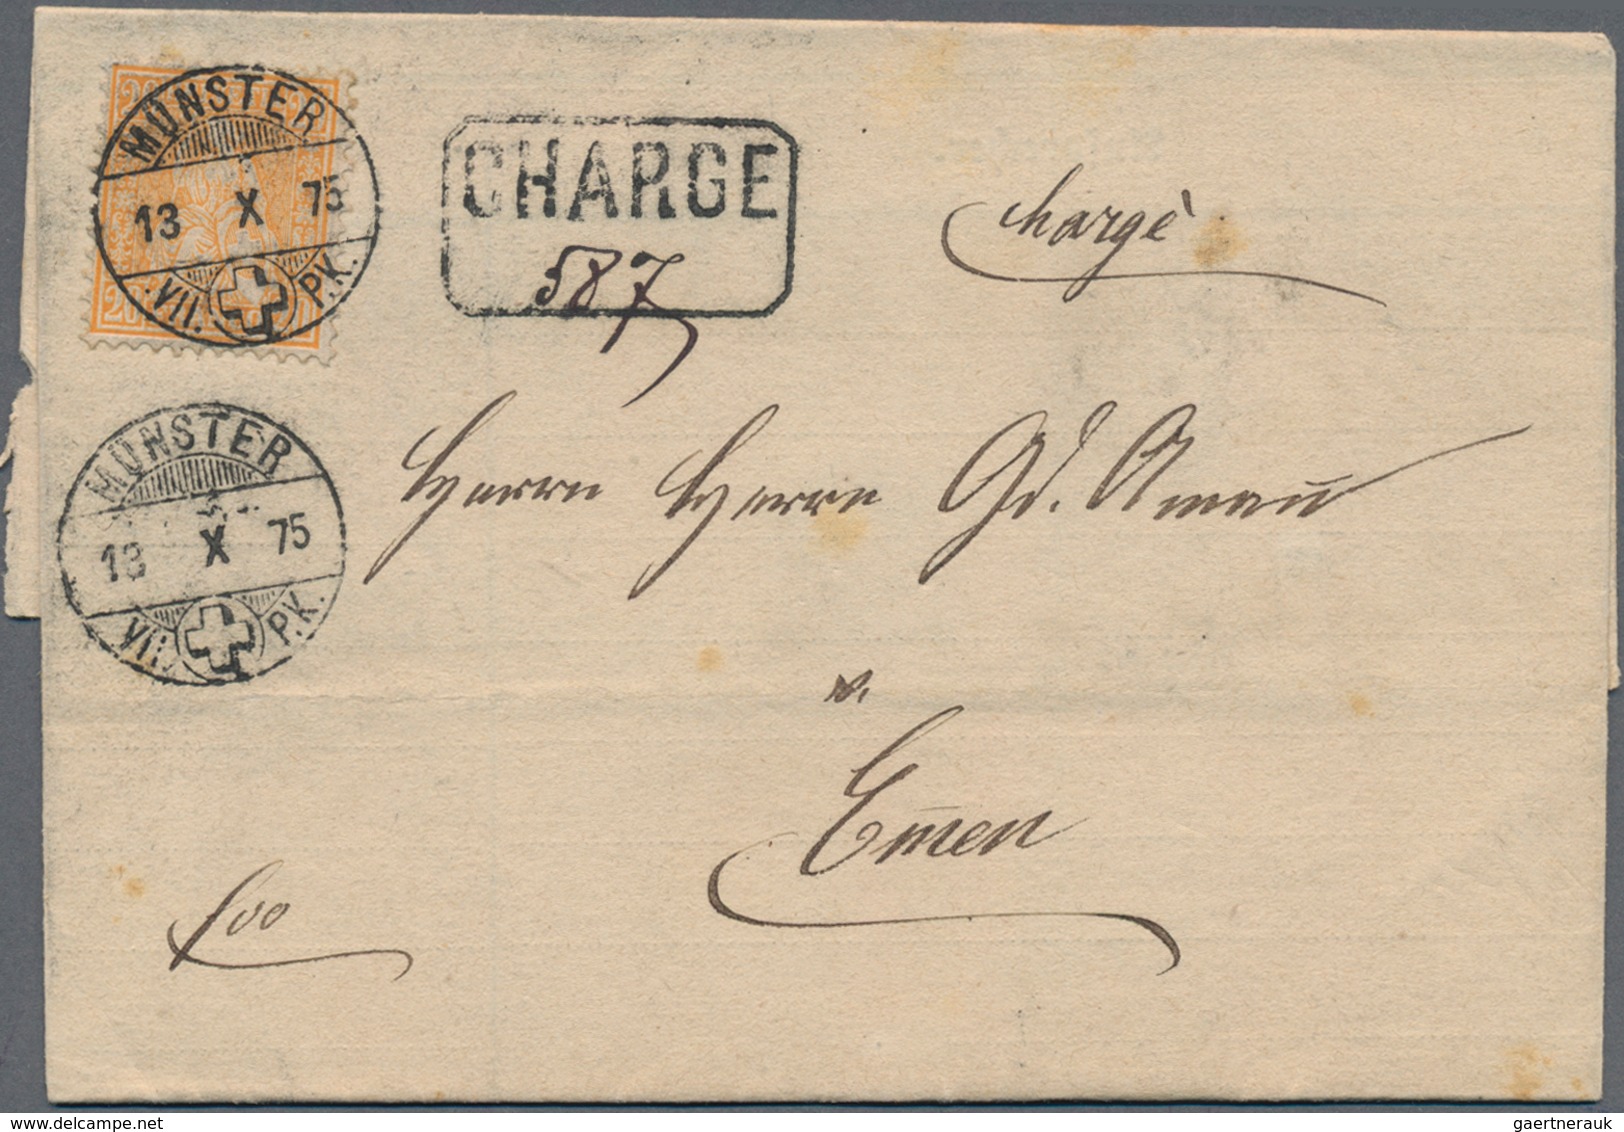 Schweiz: 1852/1900 (ca.), vielseitiger Posten von rund 150 Belegen ab Rayon mit Farbfrankatur, Paar